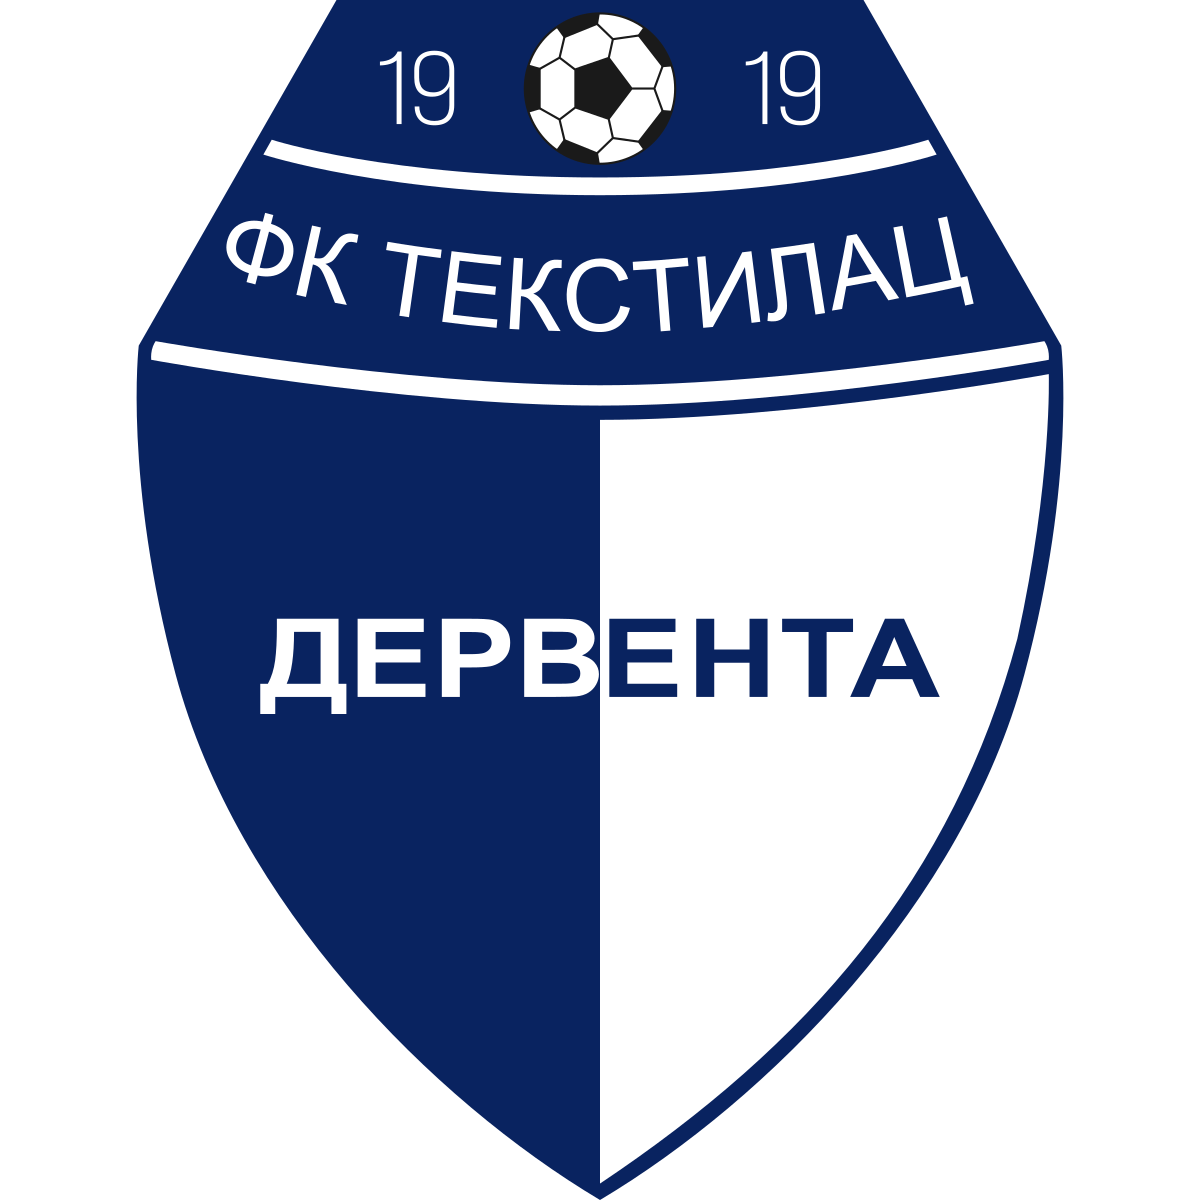 Wappen FK Tekstilac Derventa 